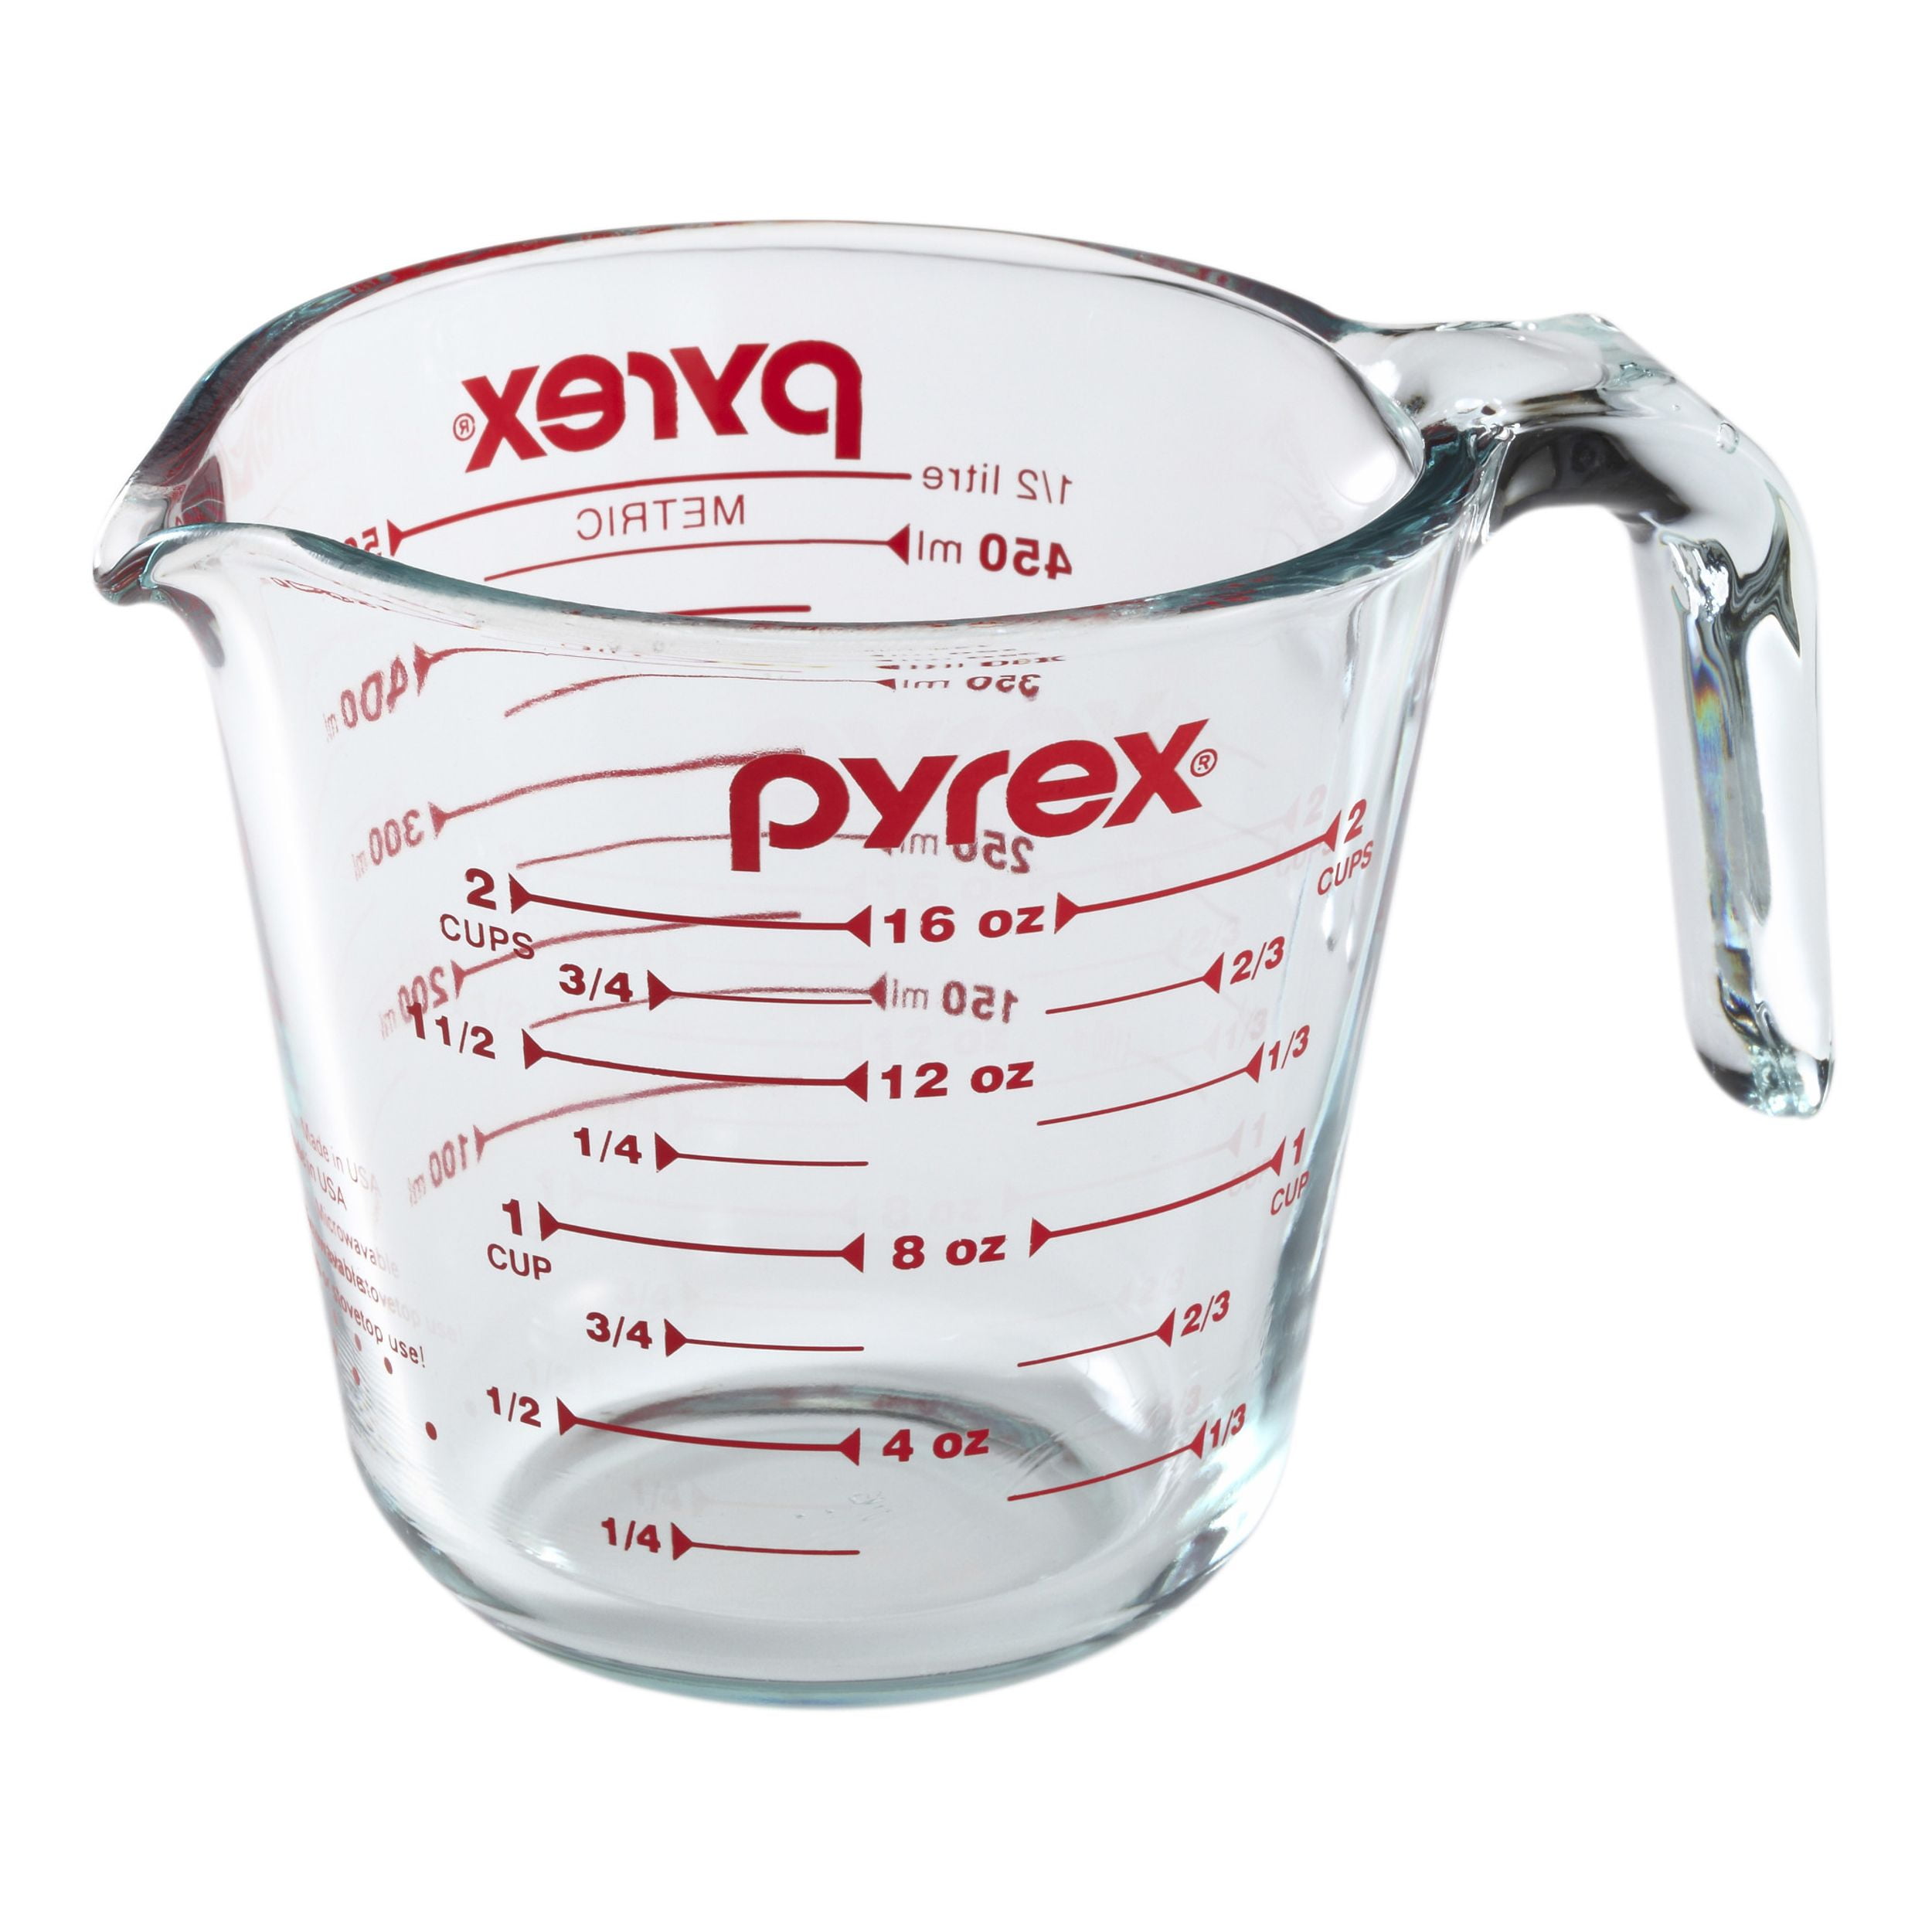 Pyrex Prepware 2-Cup Measuring Cup